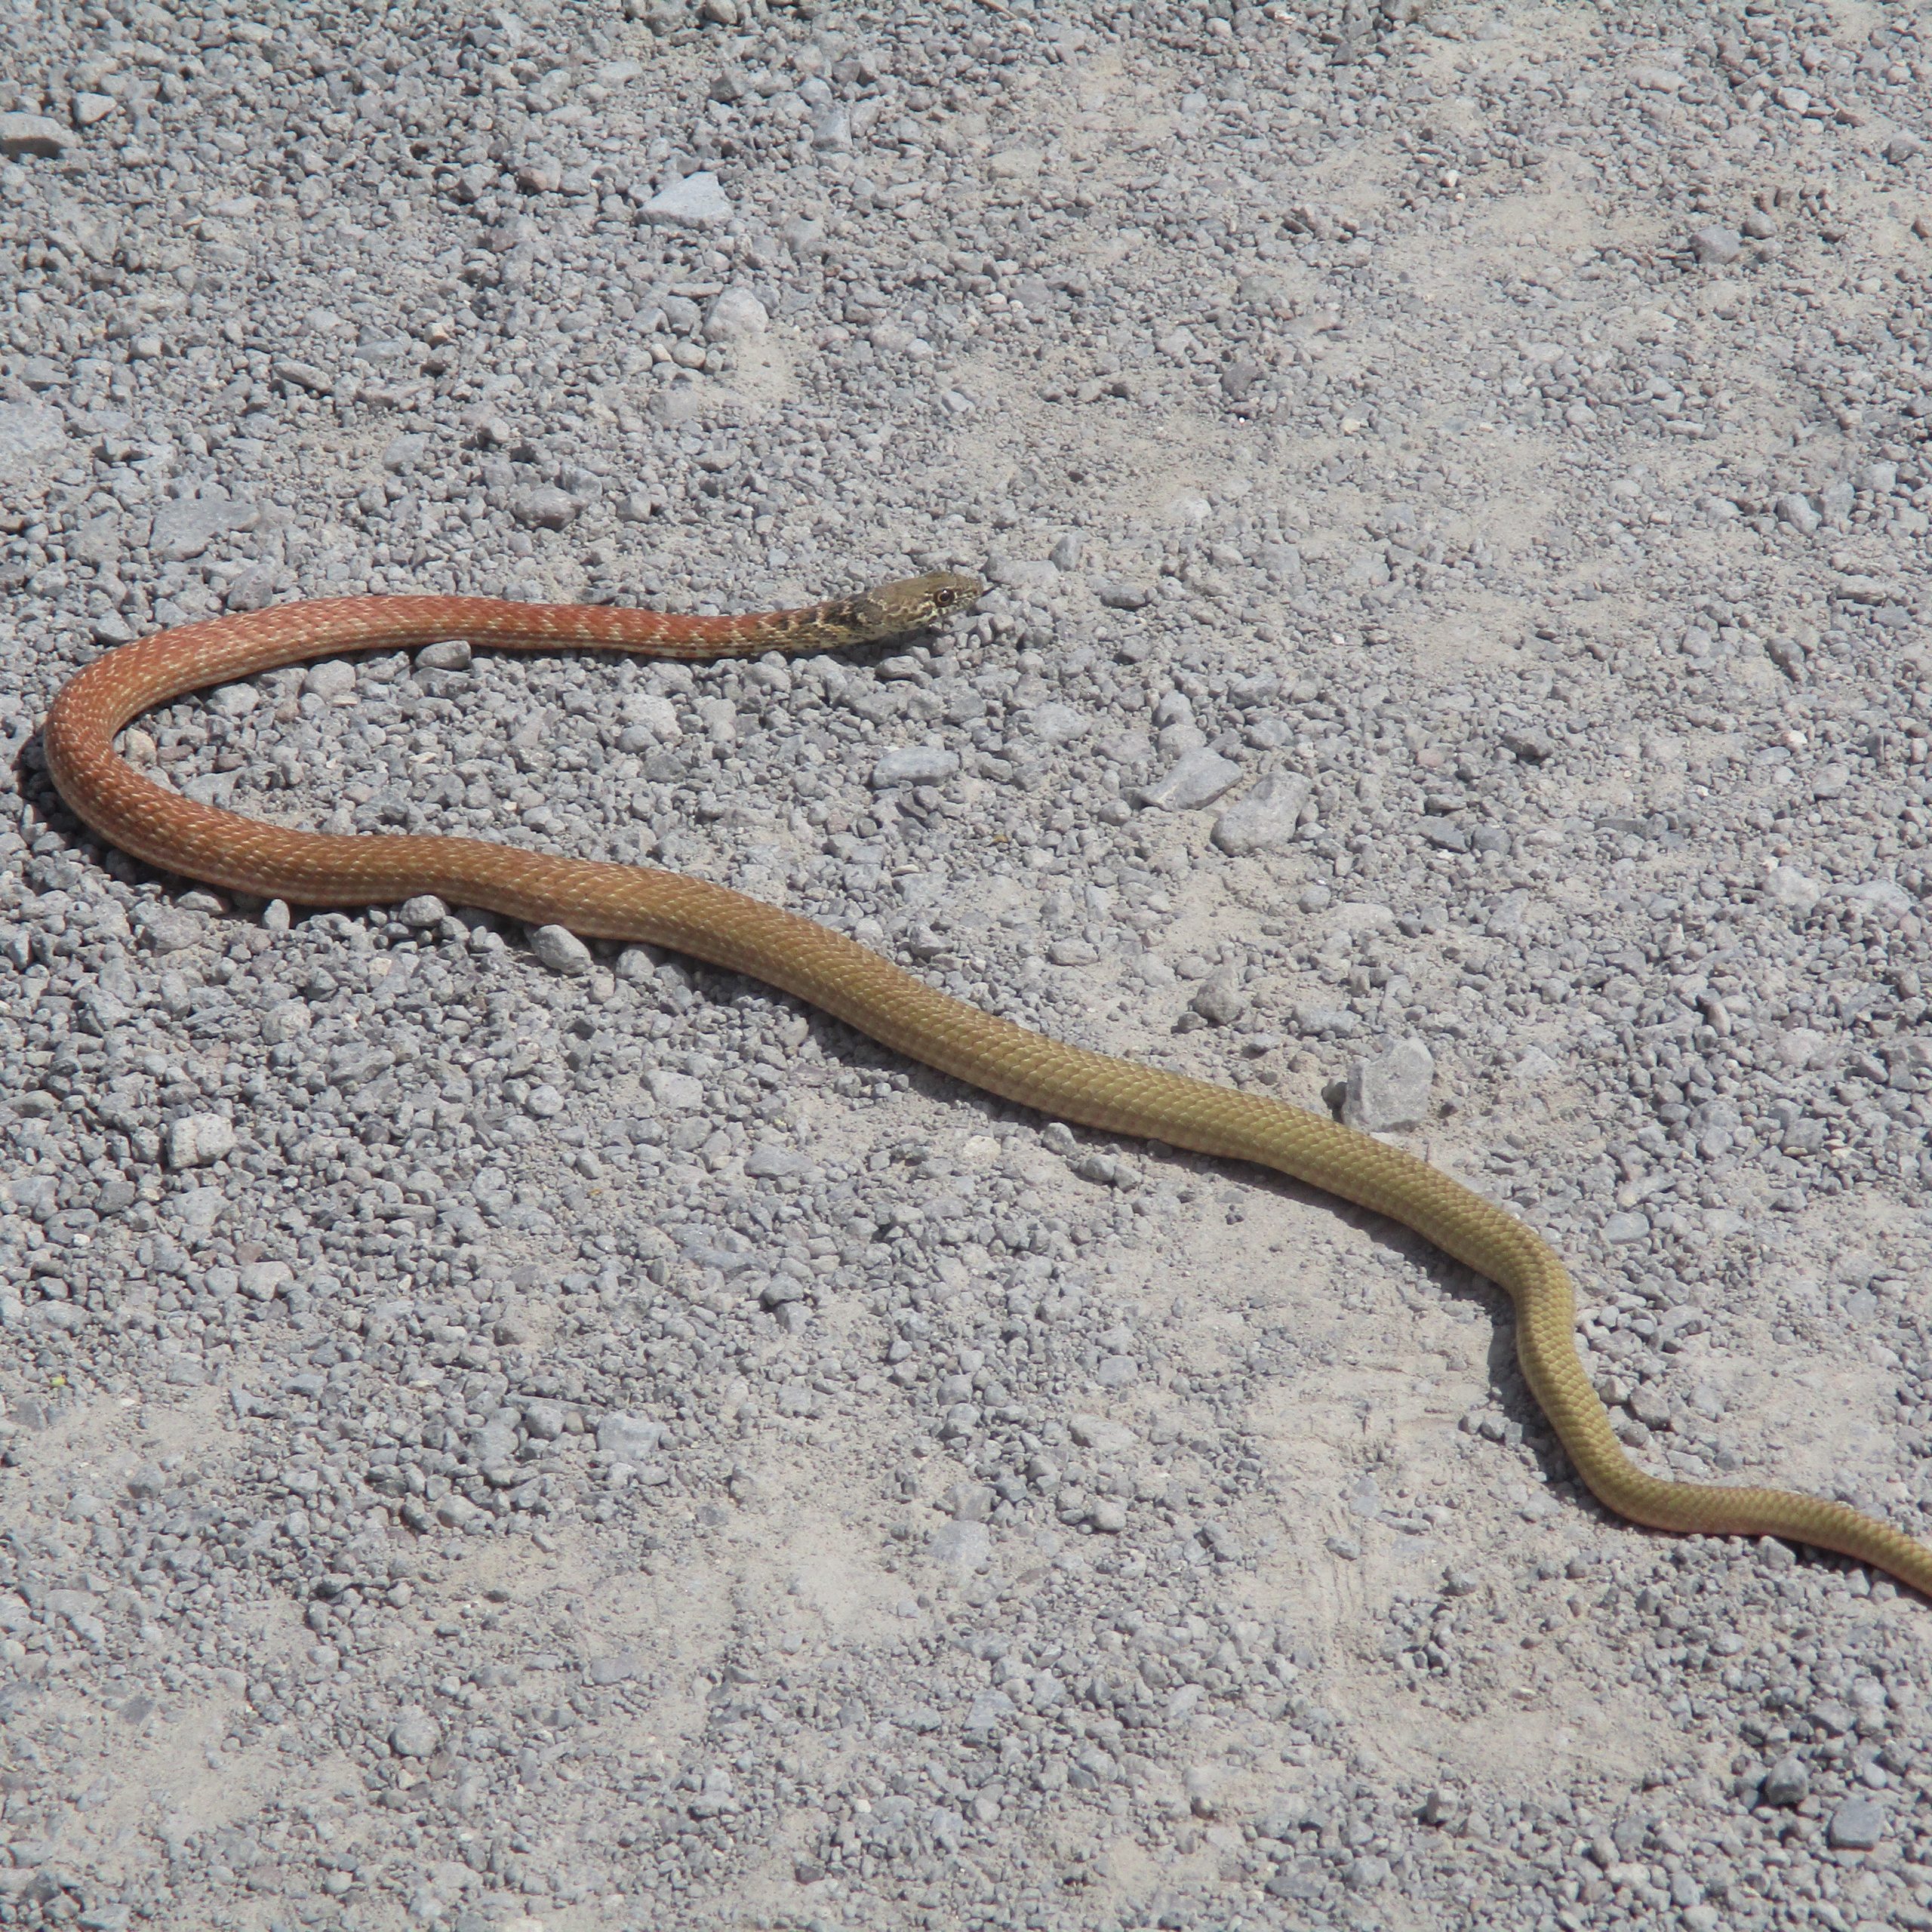 Wildlife Wednesday: Red Racer Snake